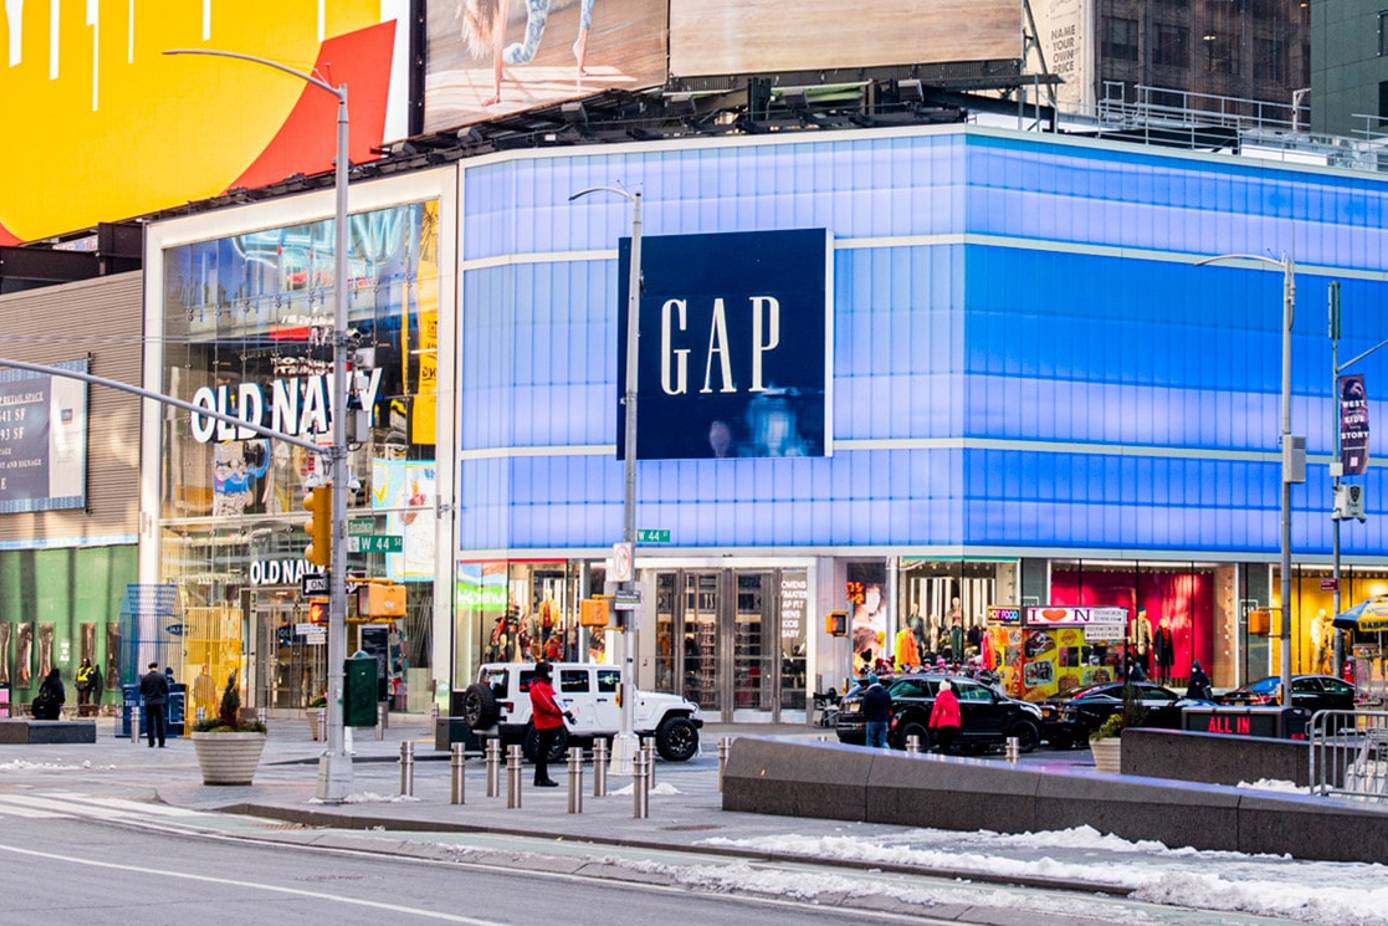 Marca Athleta de Gap Inc. abre primera tienda bajo la modalidad de